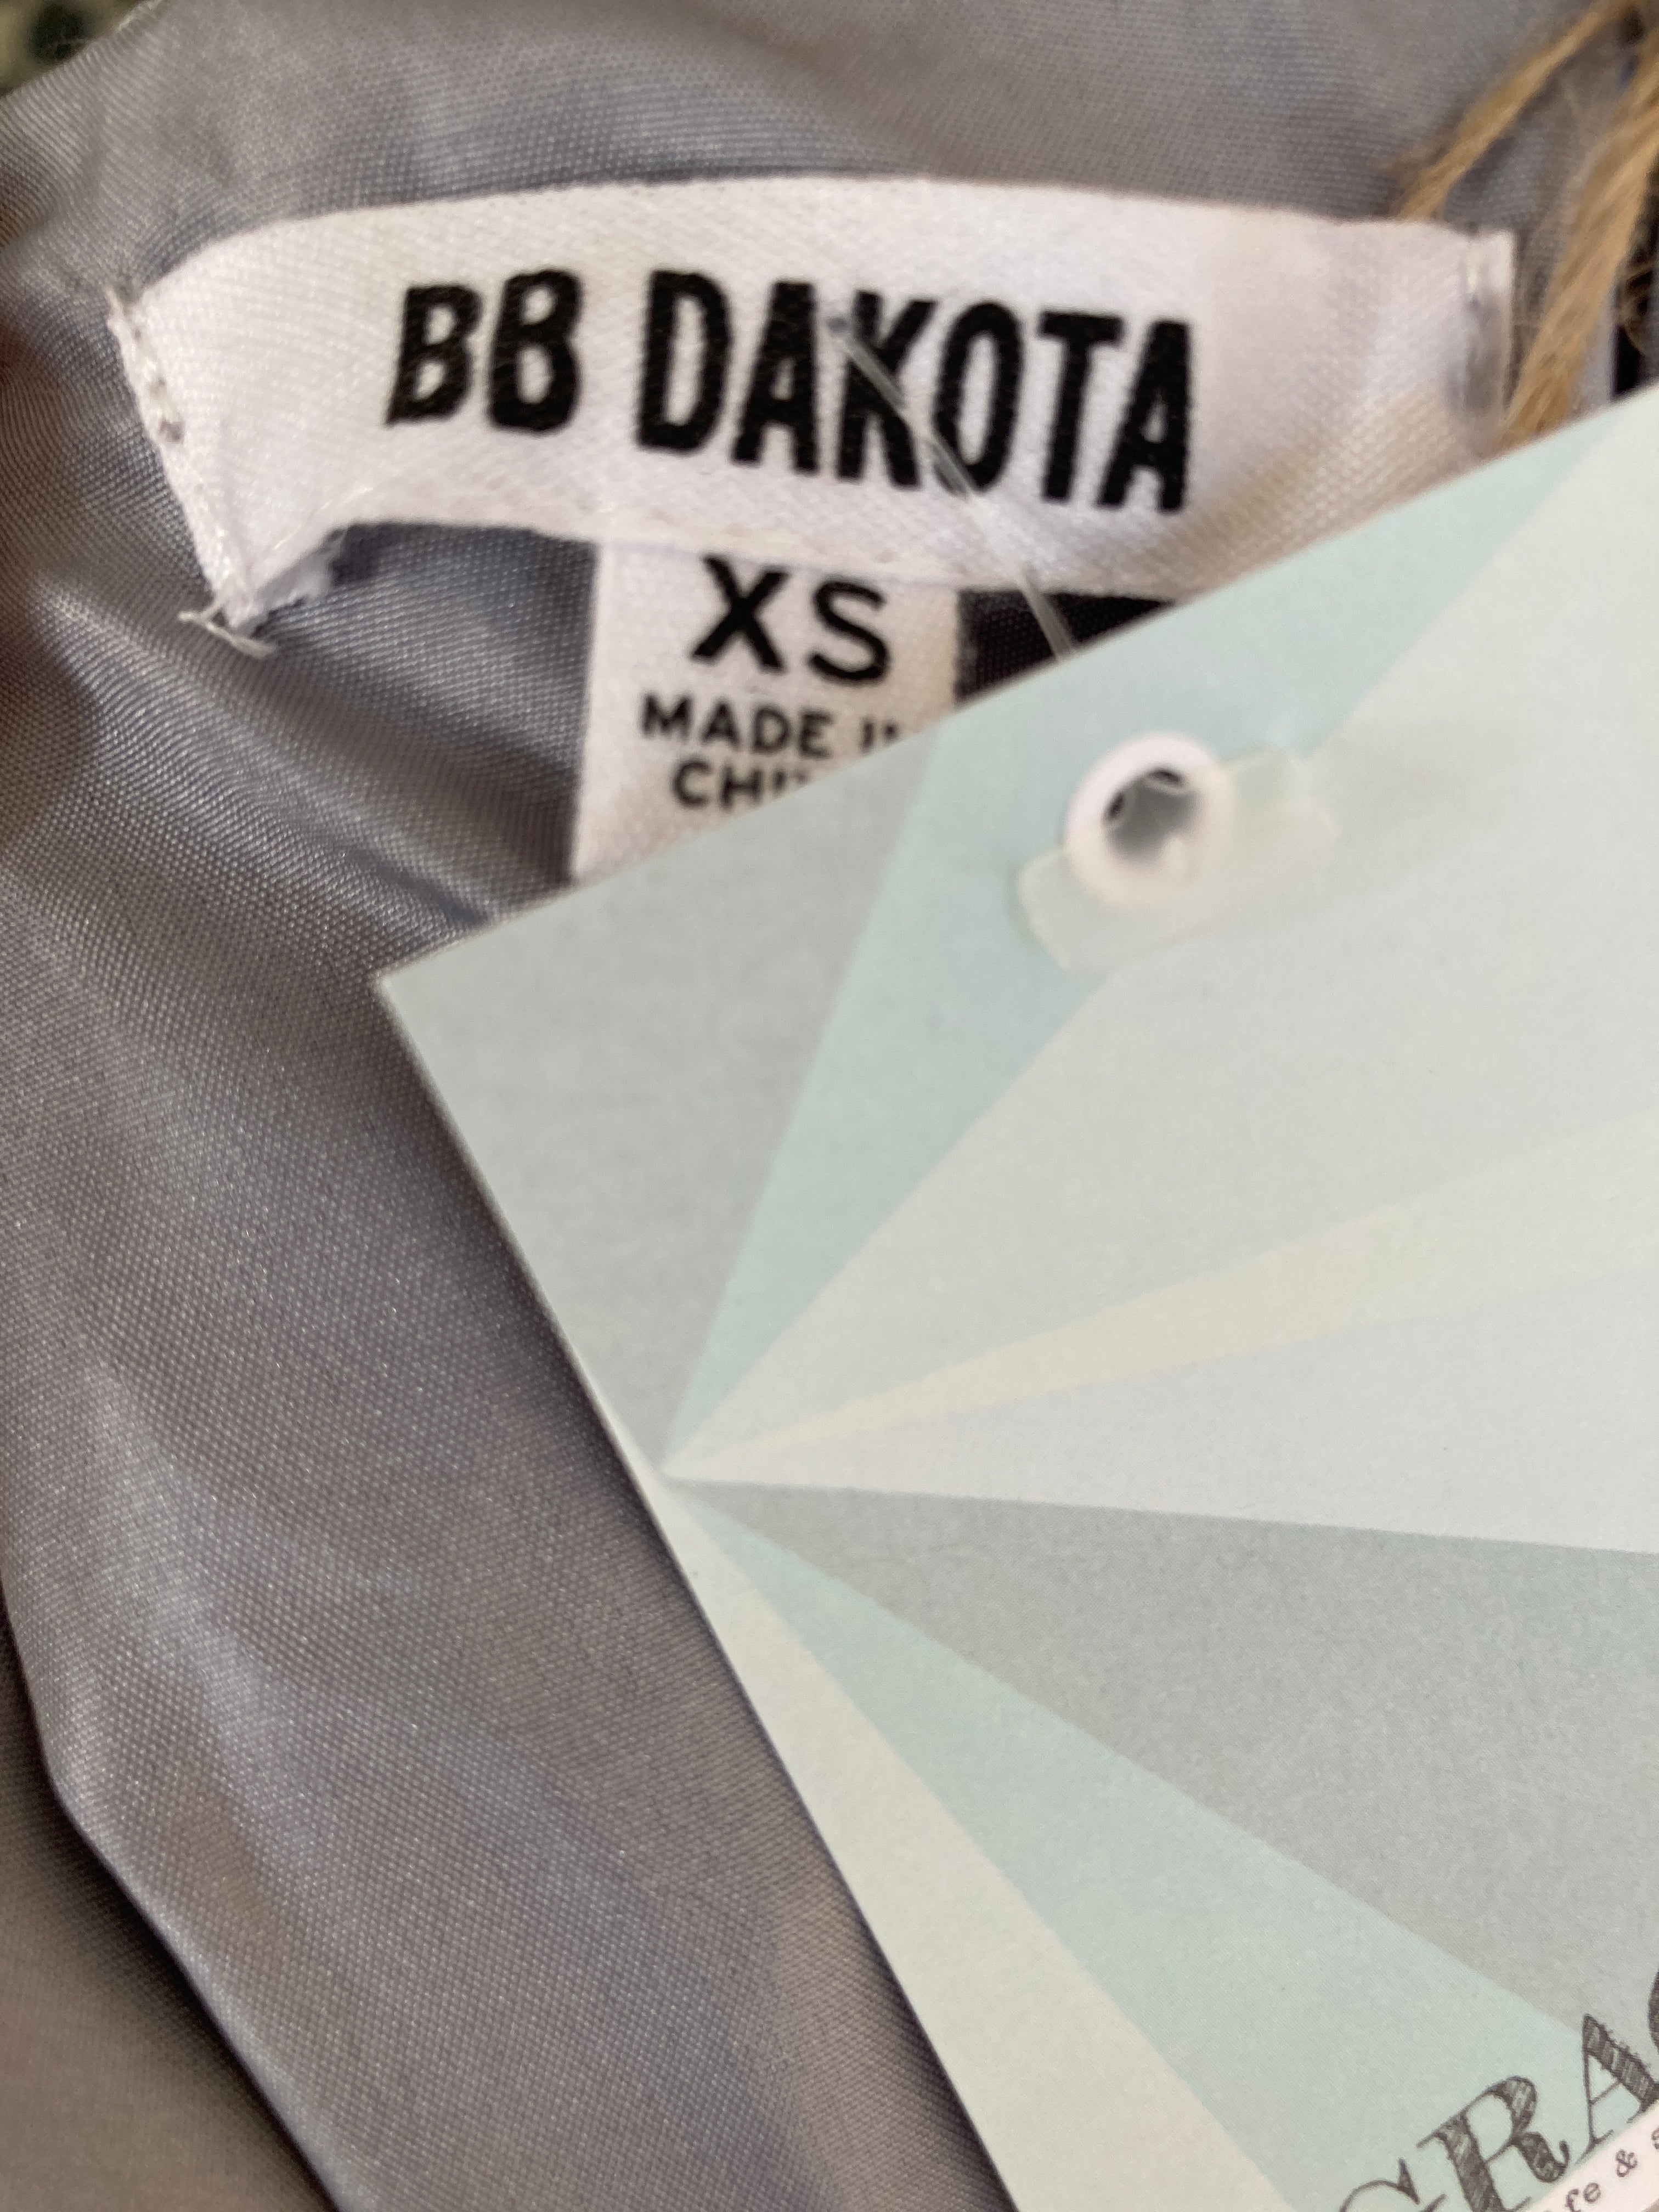 BB Dakota Dress, XS